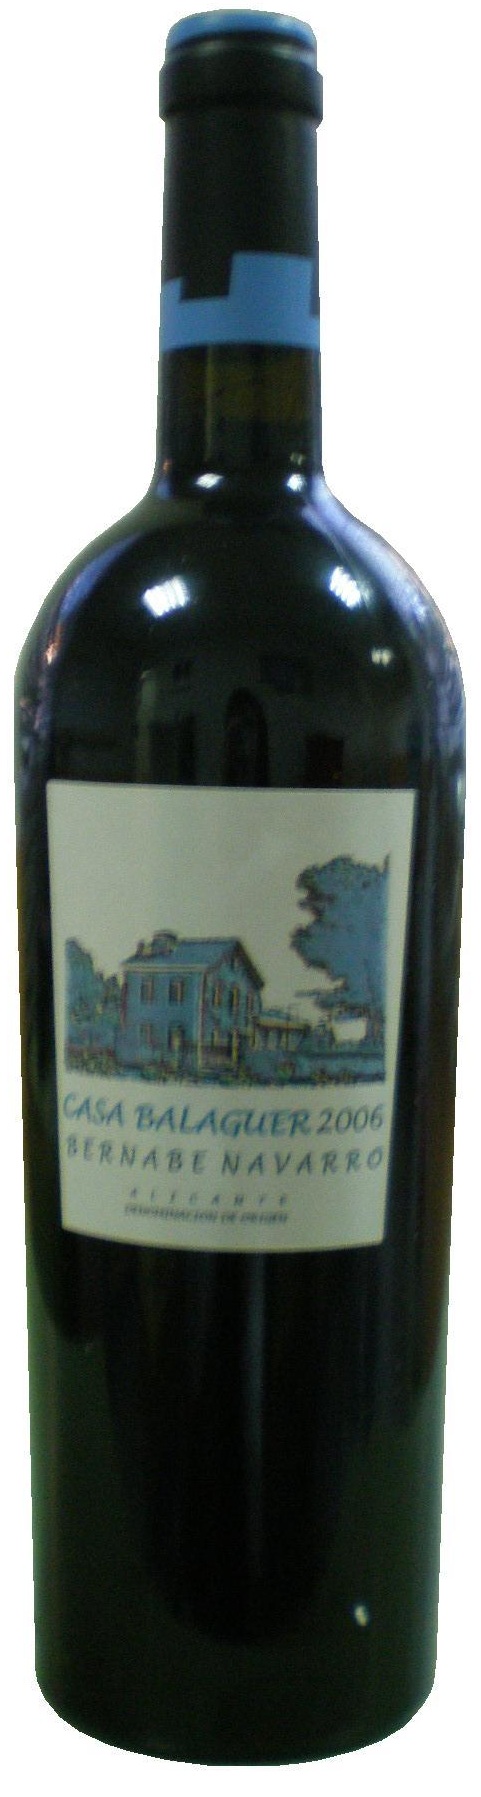 Image of Wine bottle Casa Balaguer 2008